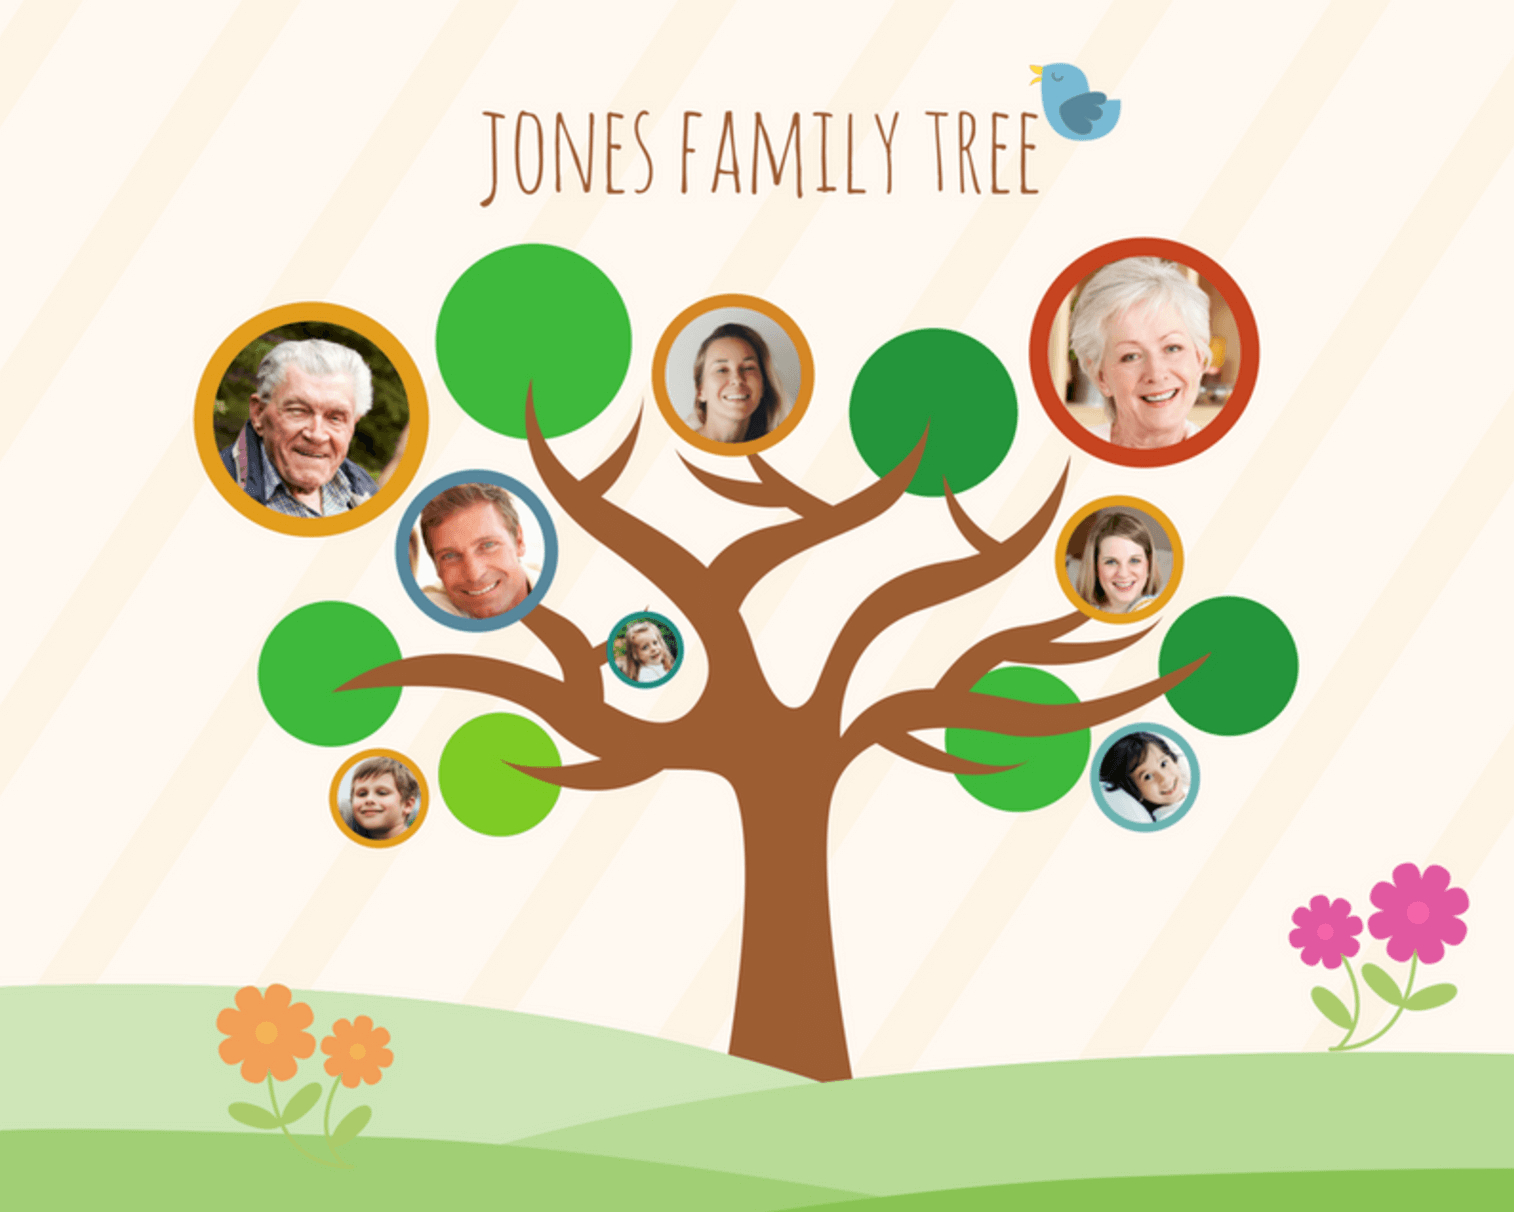 Free Online Family Tree Maker: Design A Custom Family Tree - Canva - Family Tree Maker Online Free Printable